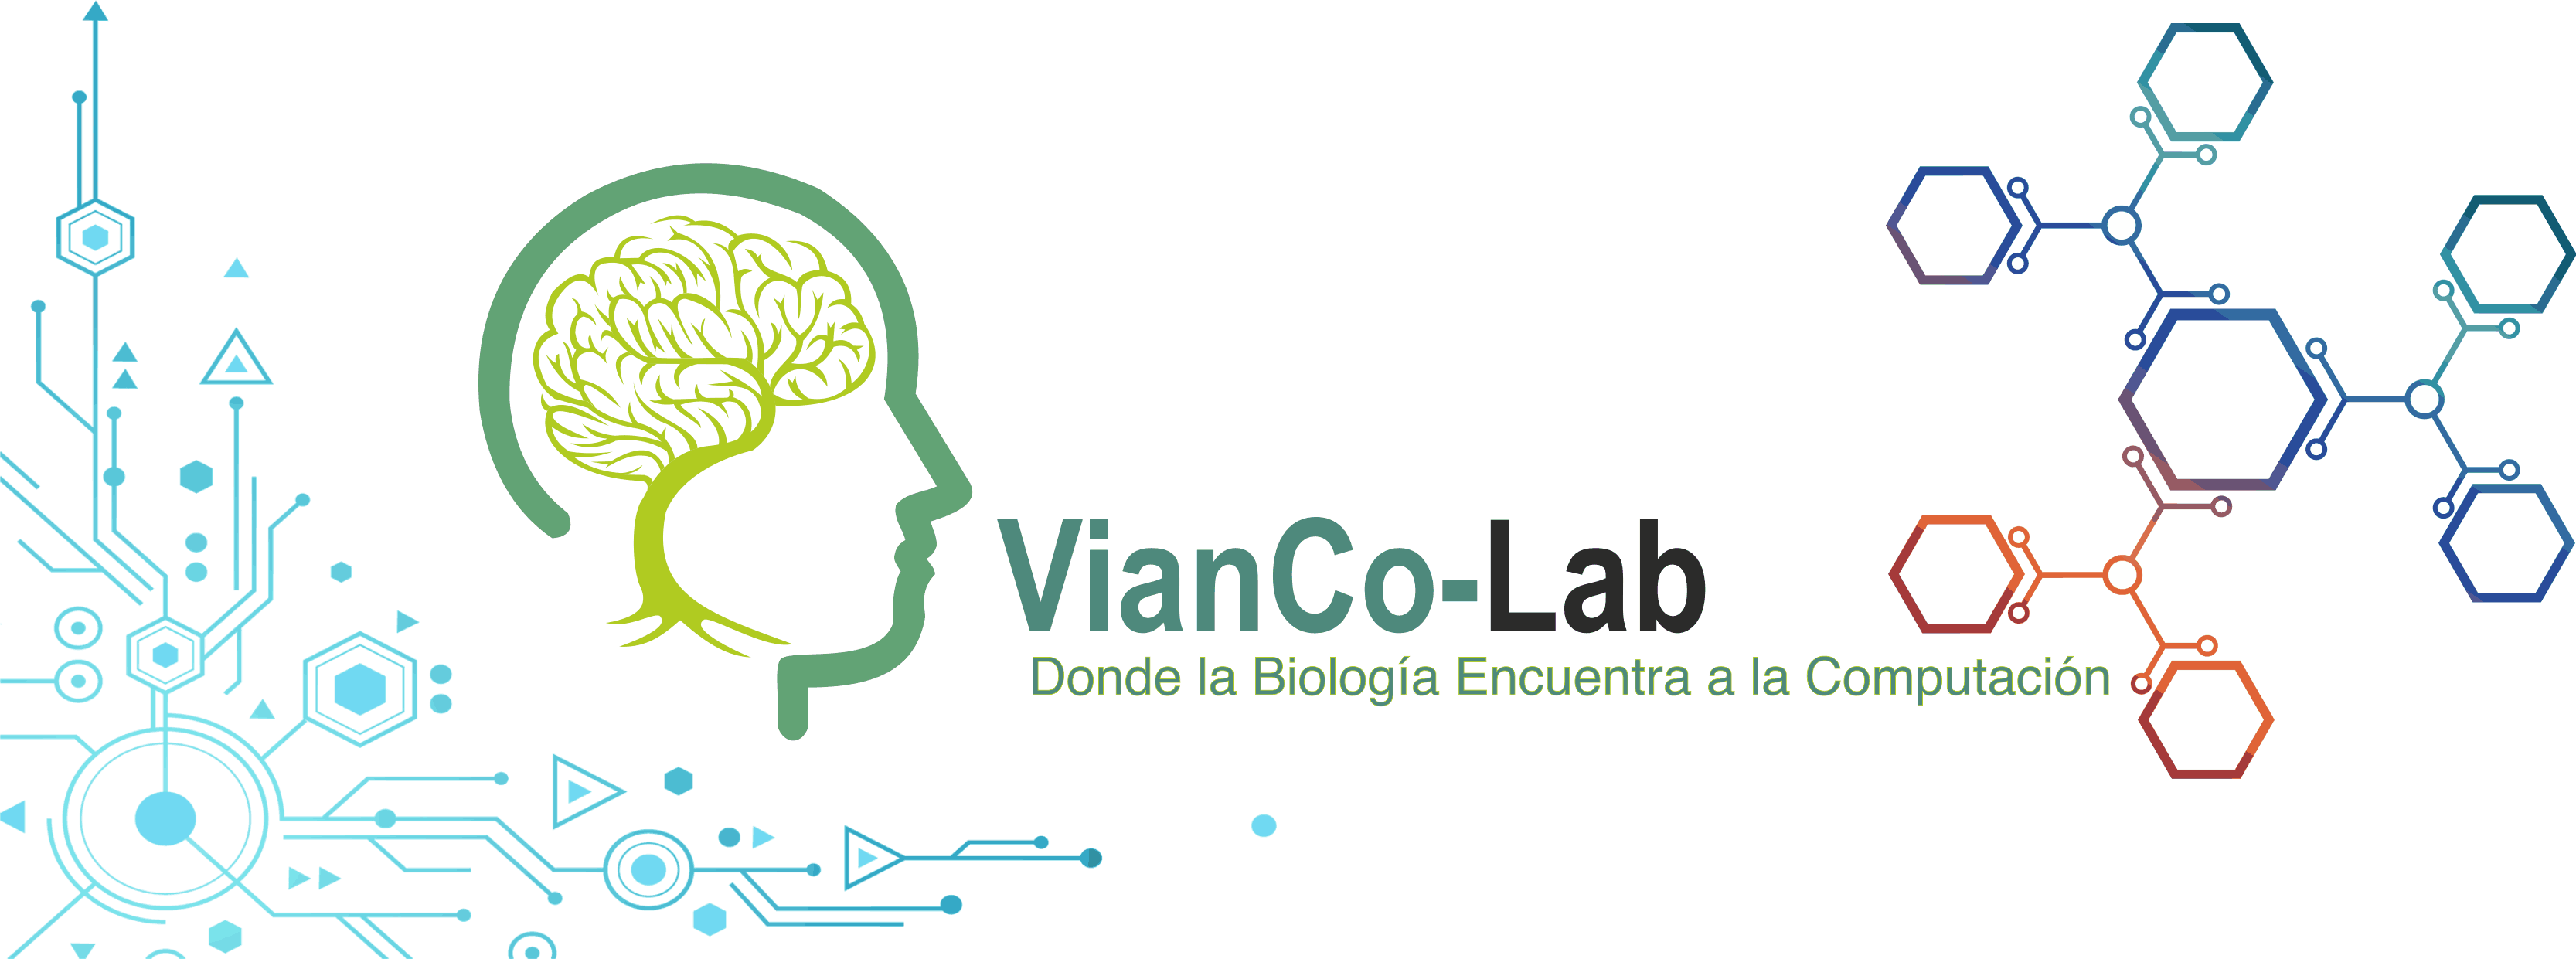 Vianco-Lab